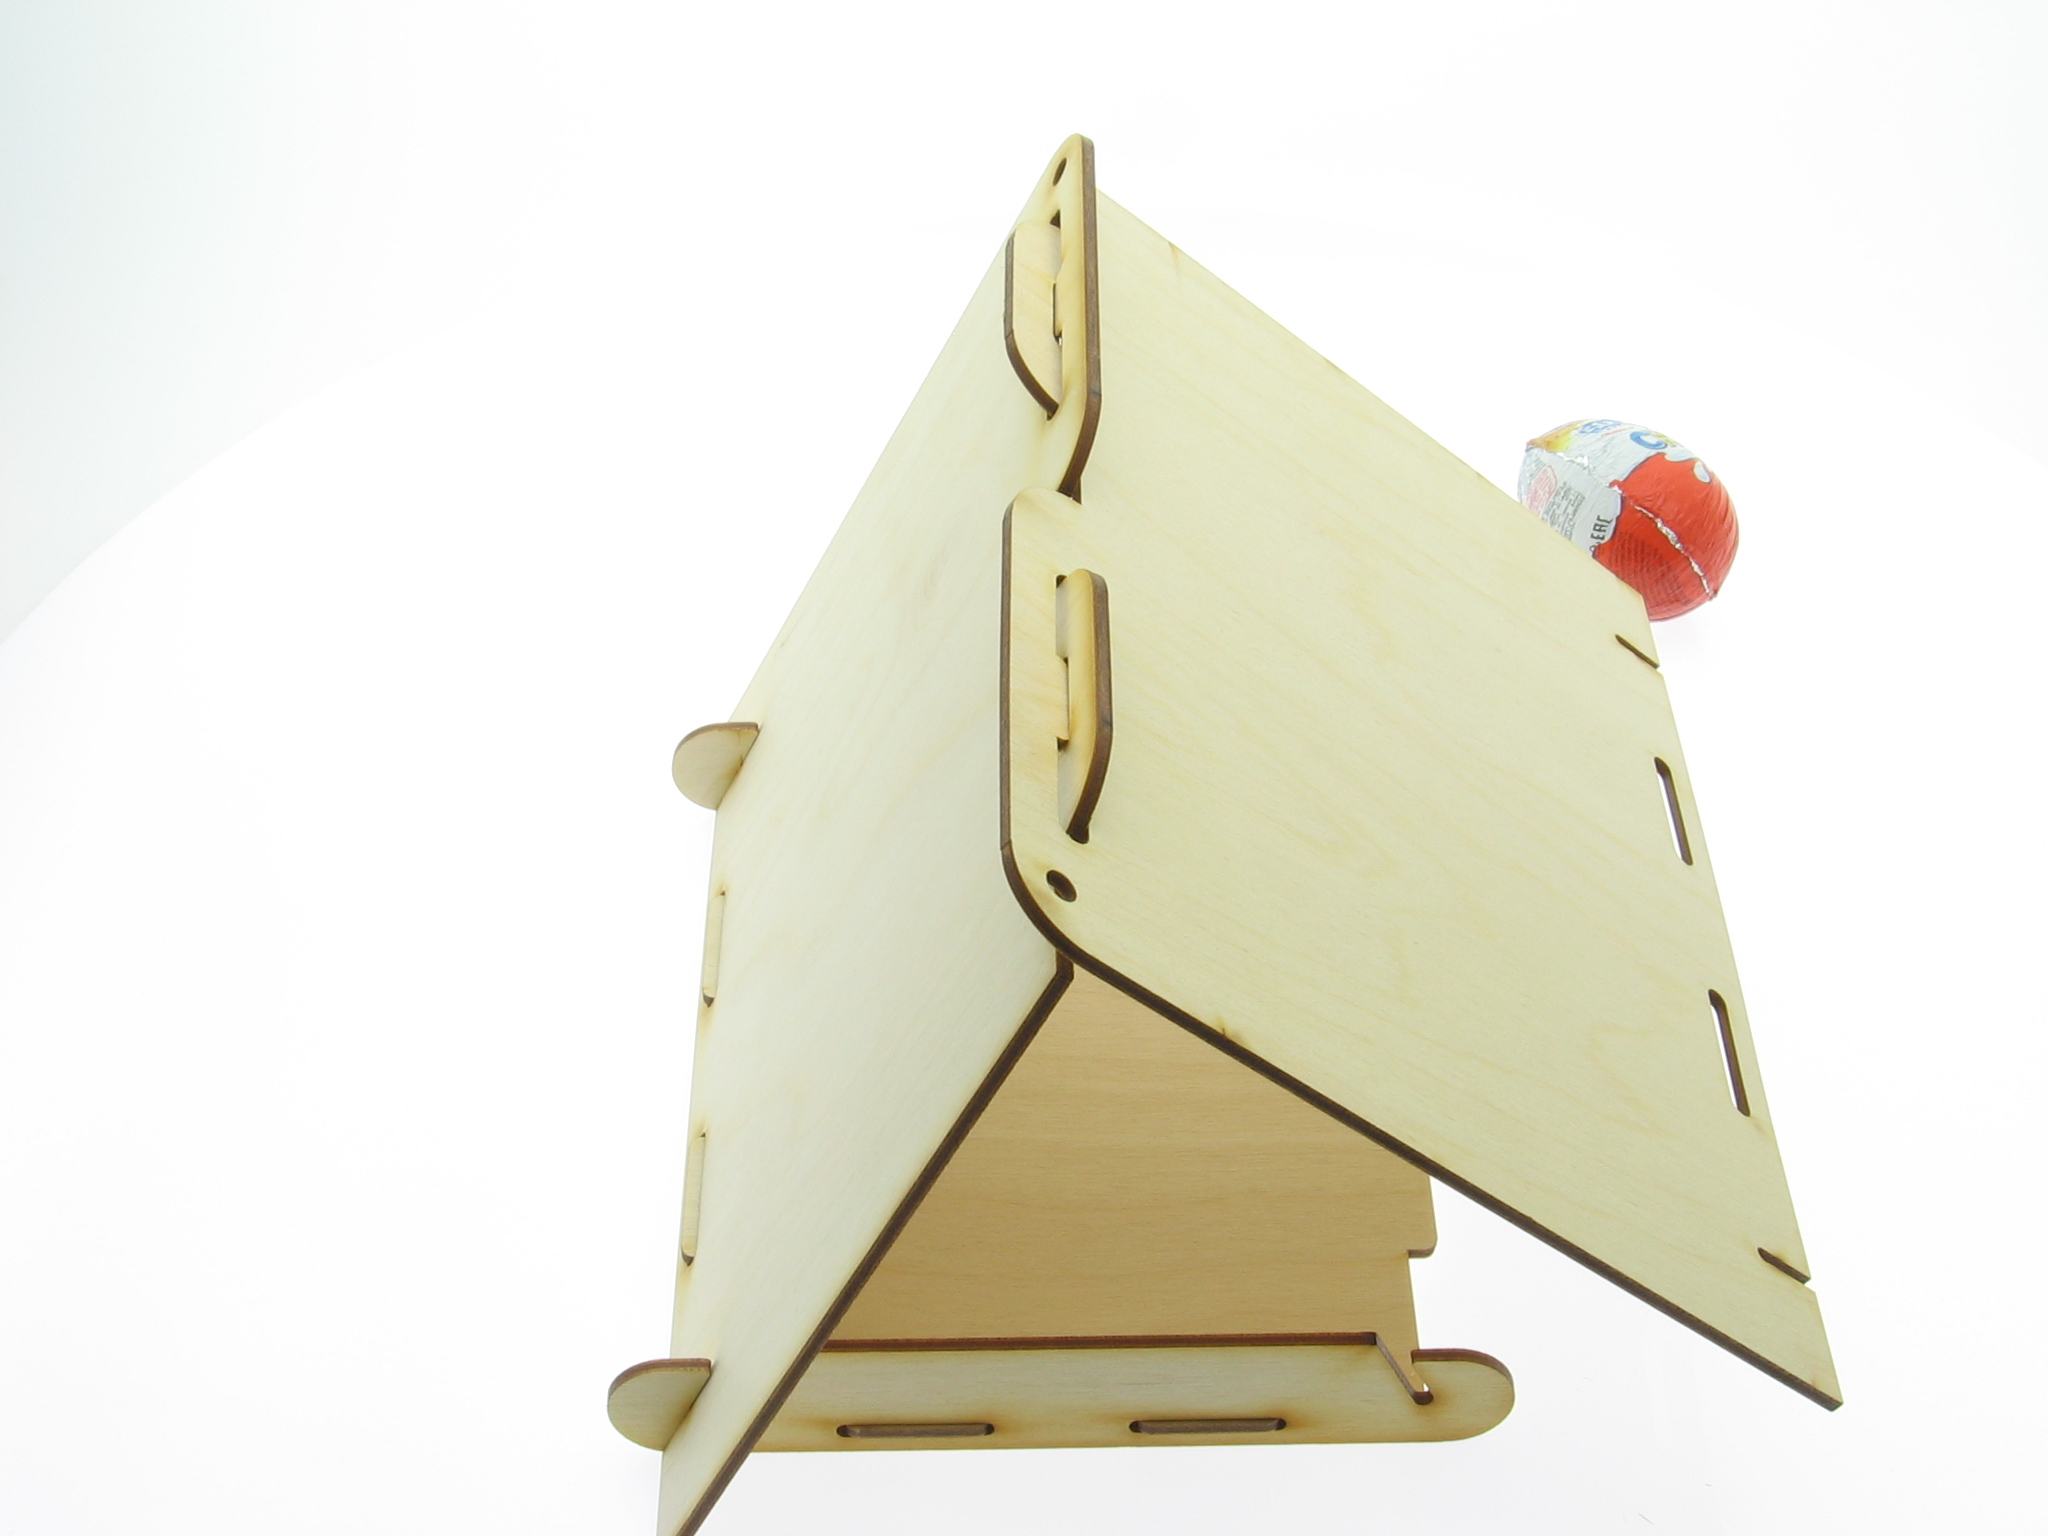 Фото-инструкция по сборке своими руками кормушки для птиц "Шалаш" из заготовок фанеры. Детский набор для творчества от компани "Чилдрен той"